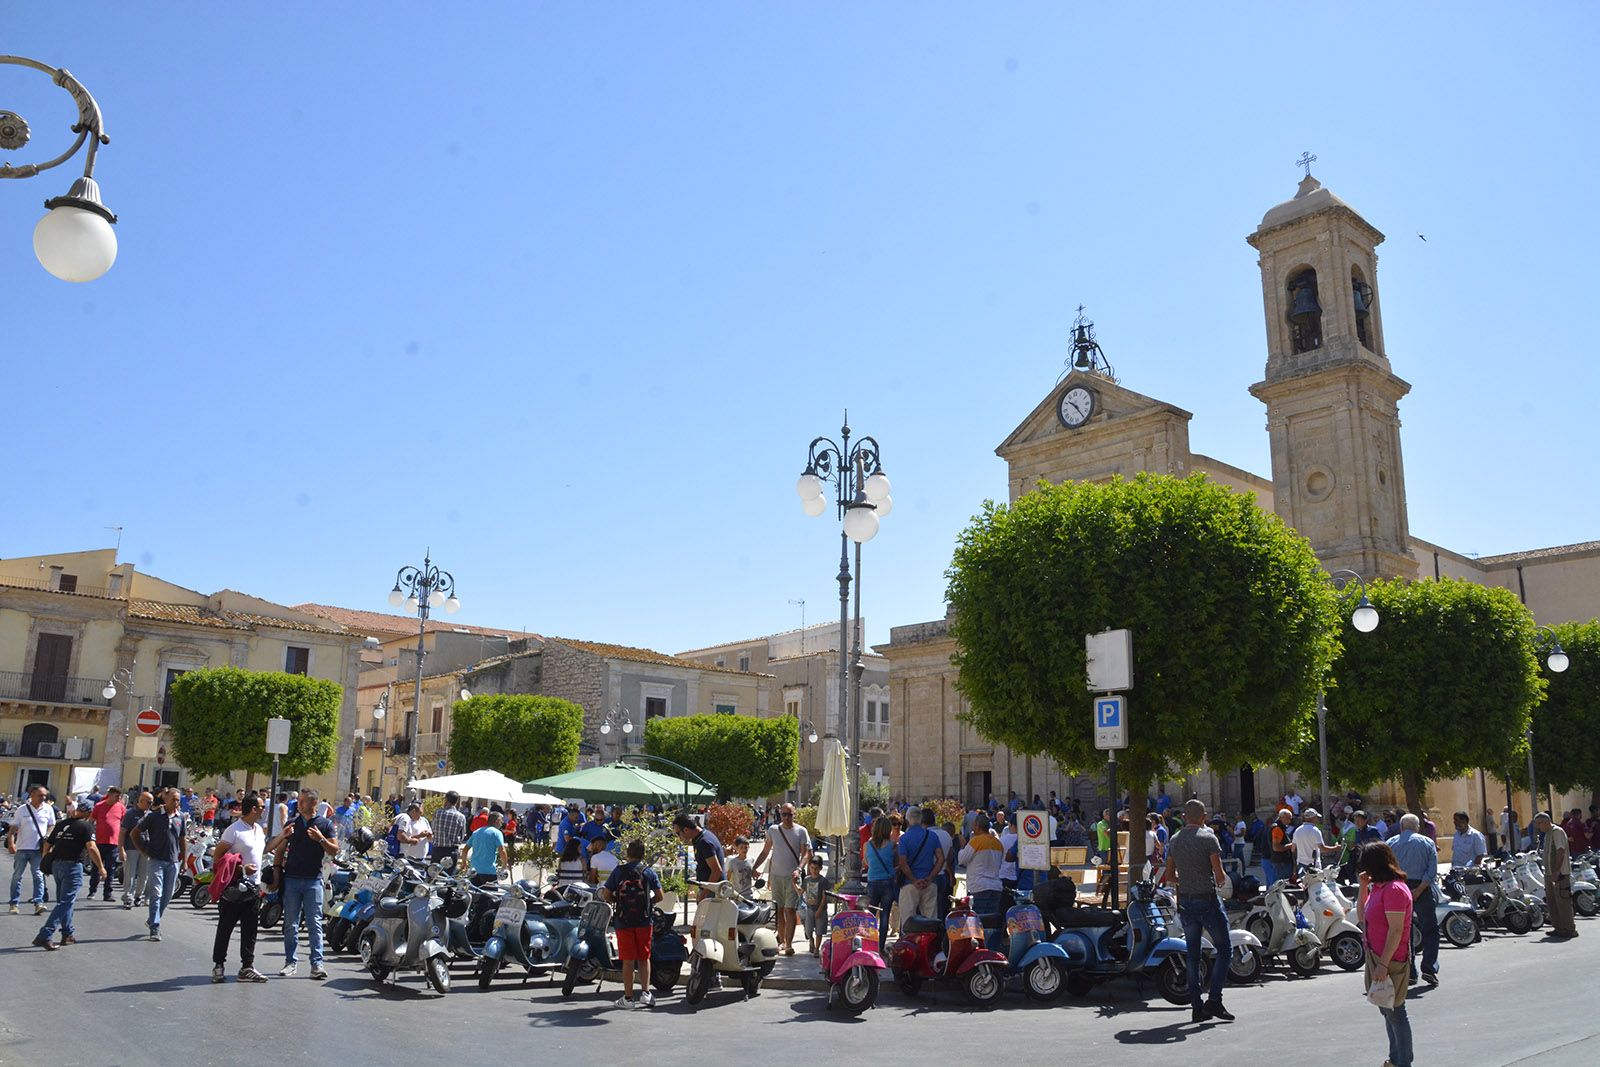  “VespAmicizia” fra Mezzagnone e Montalbano: Santa Croce si fa attraente